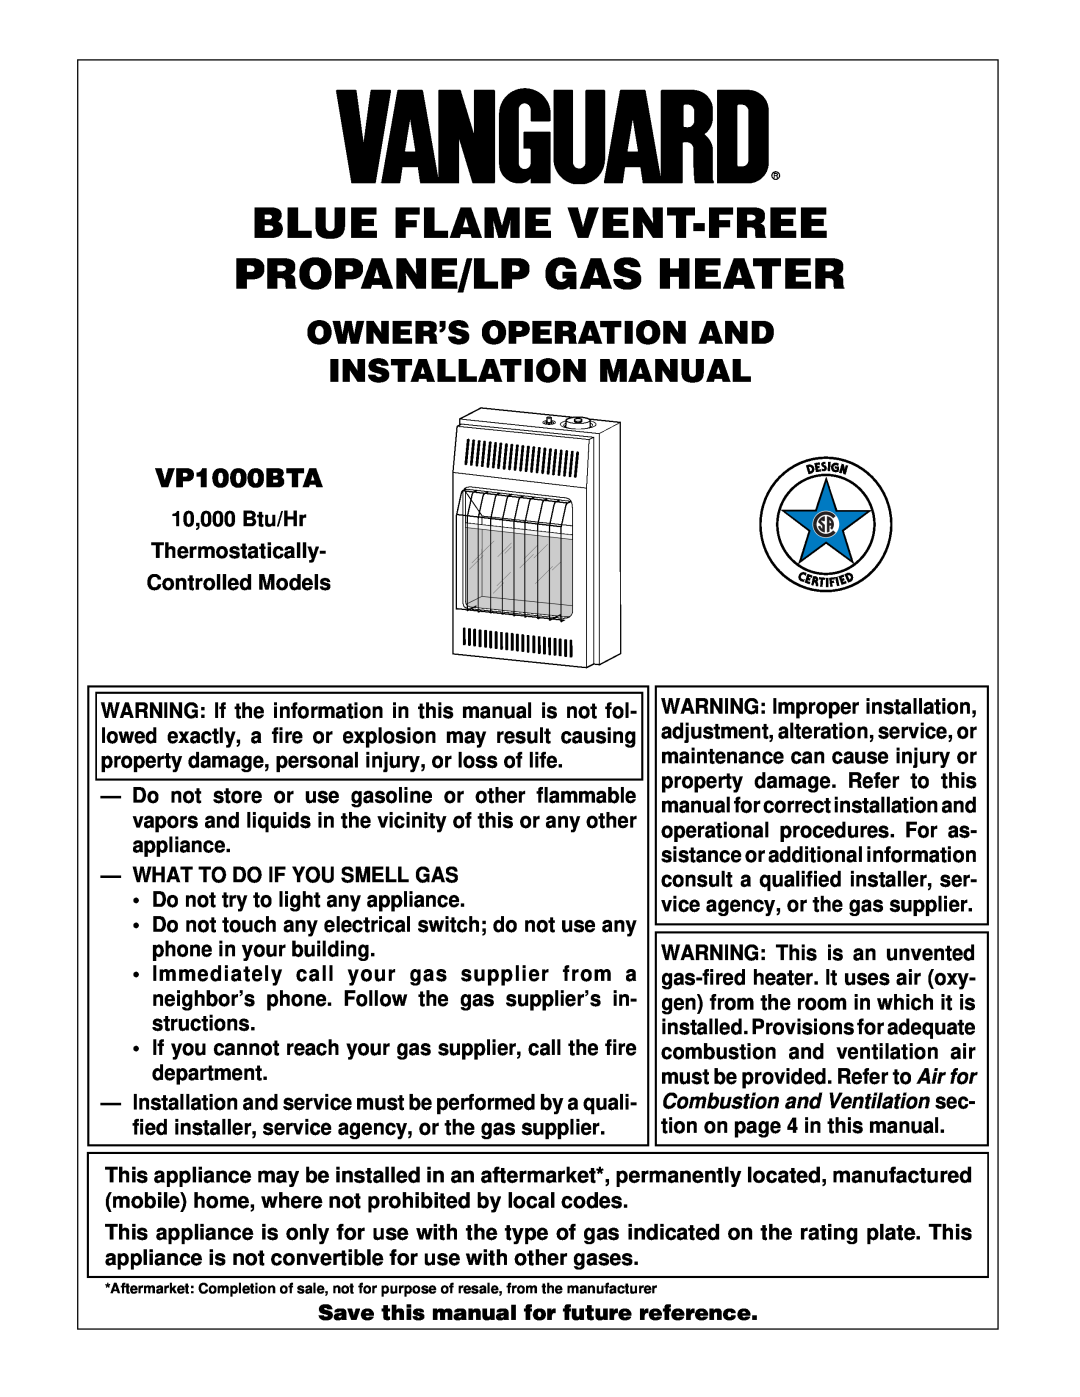 Desa VP1000BTA installation manual Owner’S Operation And Installation Manual, What To Do If You Smell Gas 